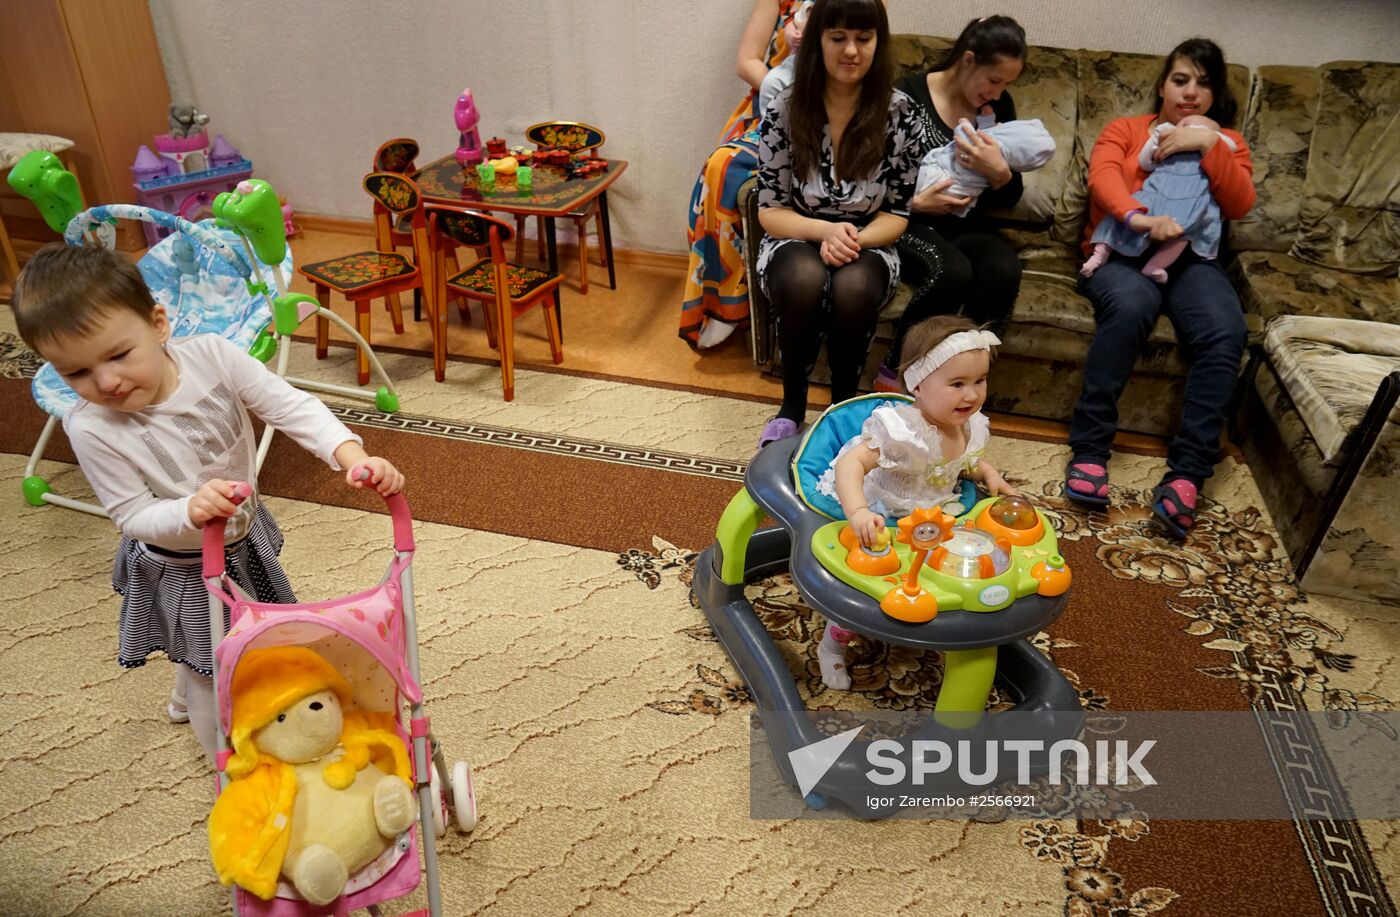 Nadezhda children's assistance center in Kaliningrad